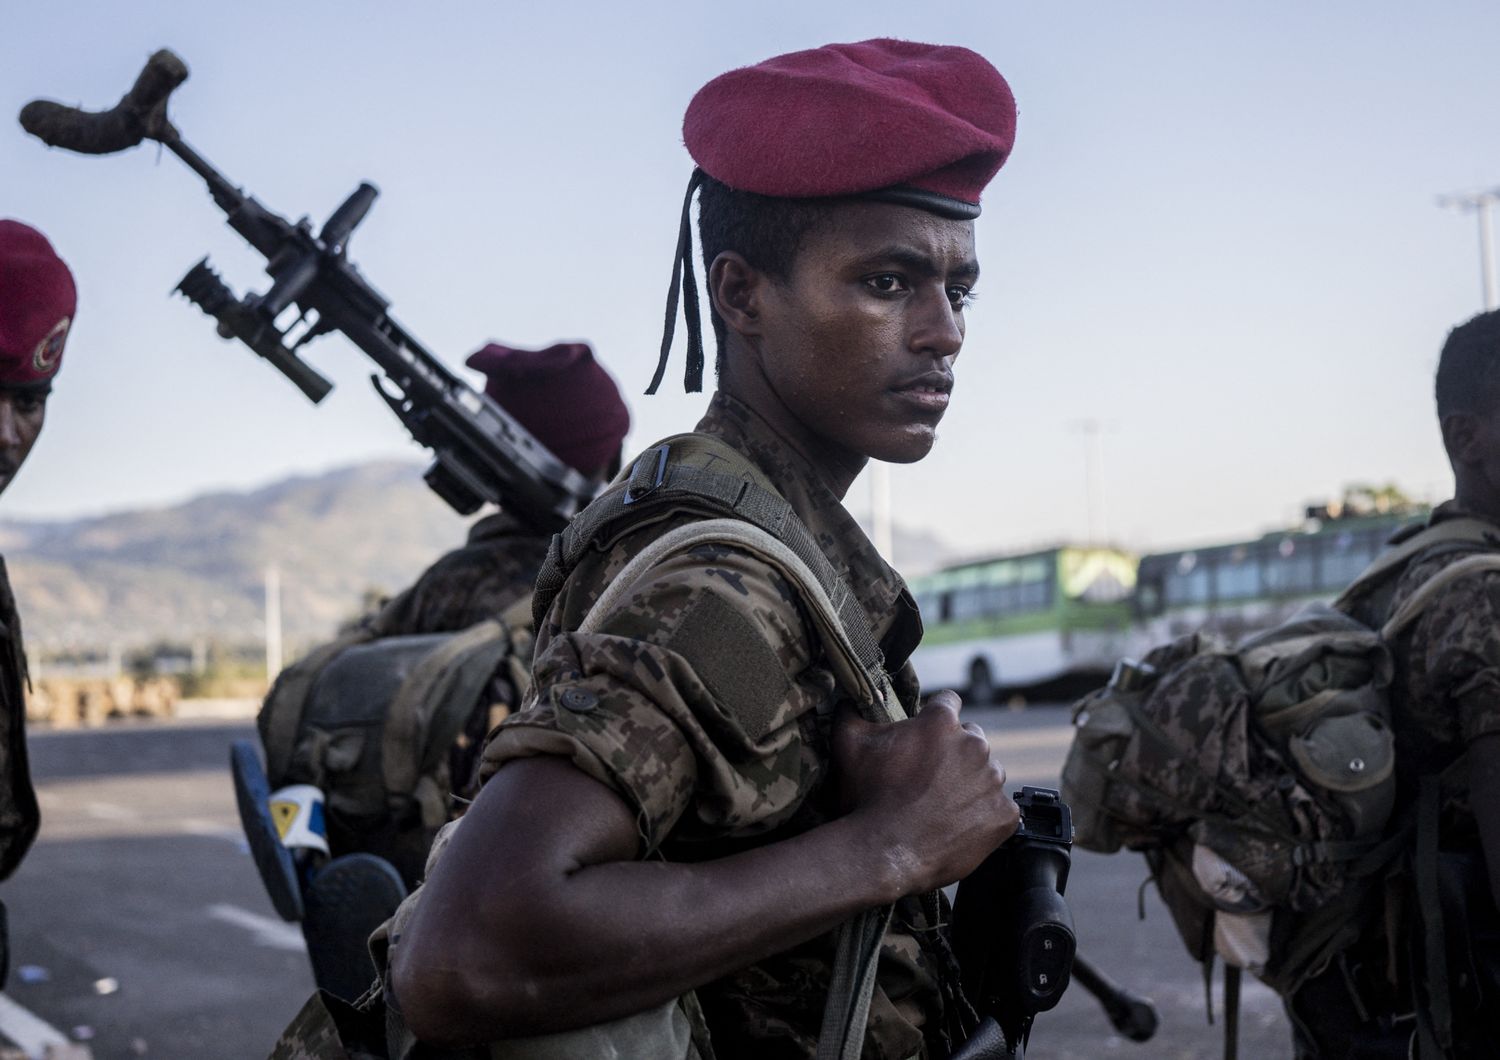 Soldati dell'Etiopia&nbsp;